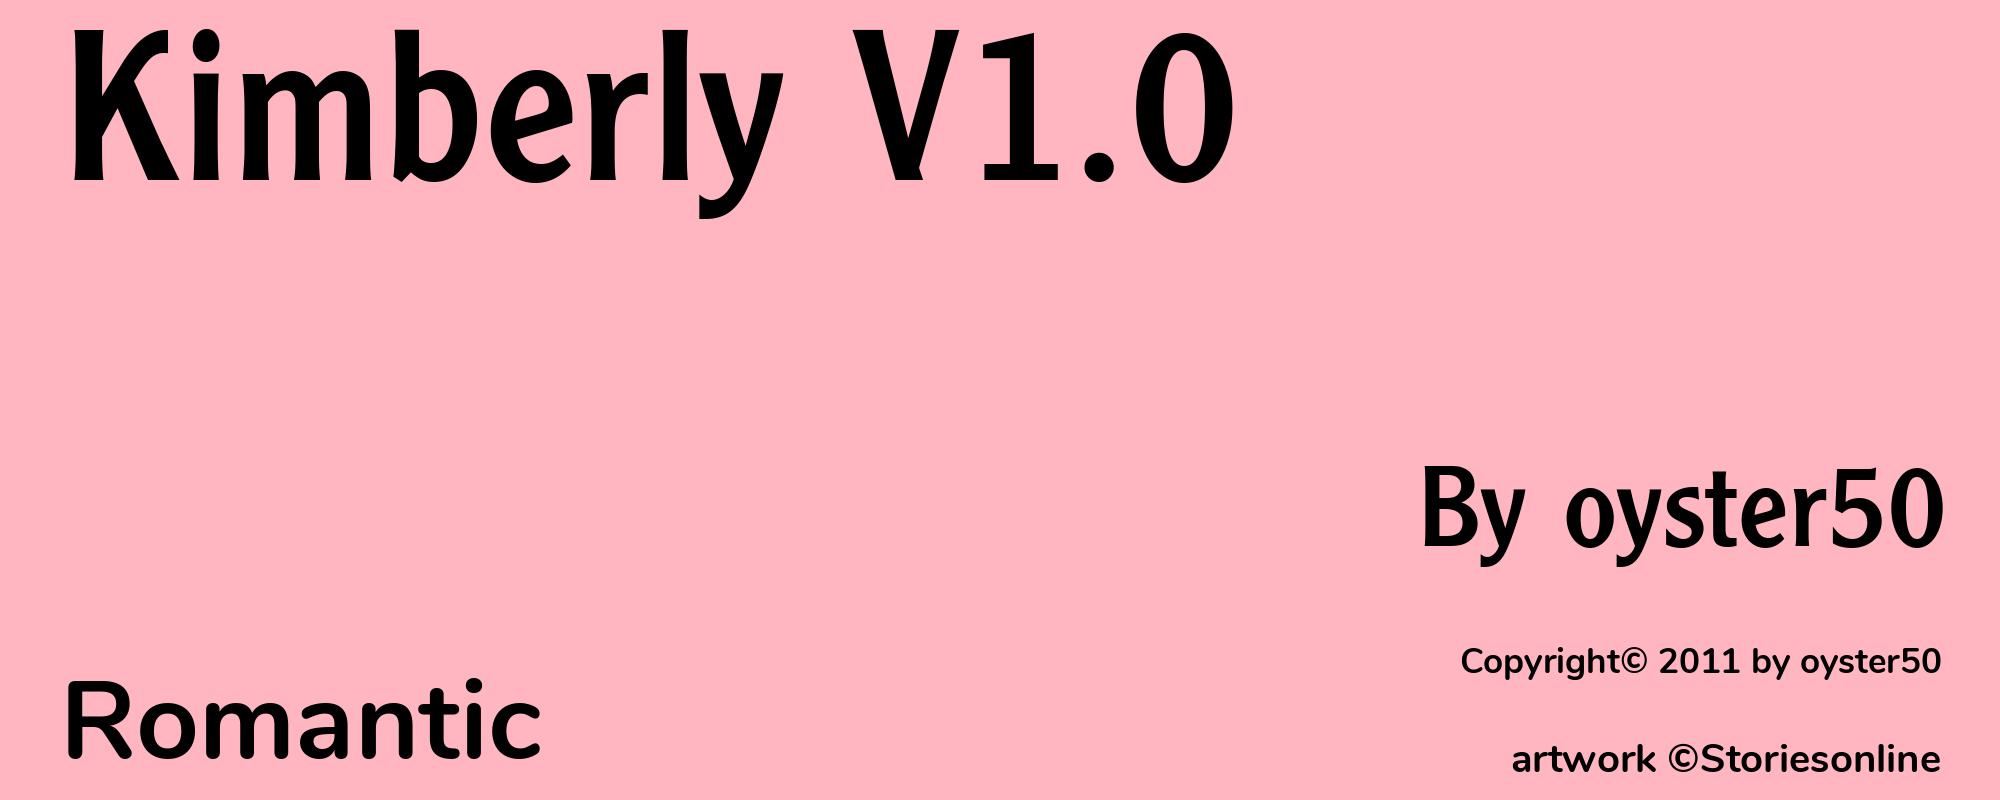 Kimberly V1.0 - Cover